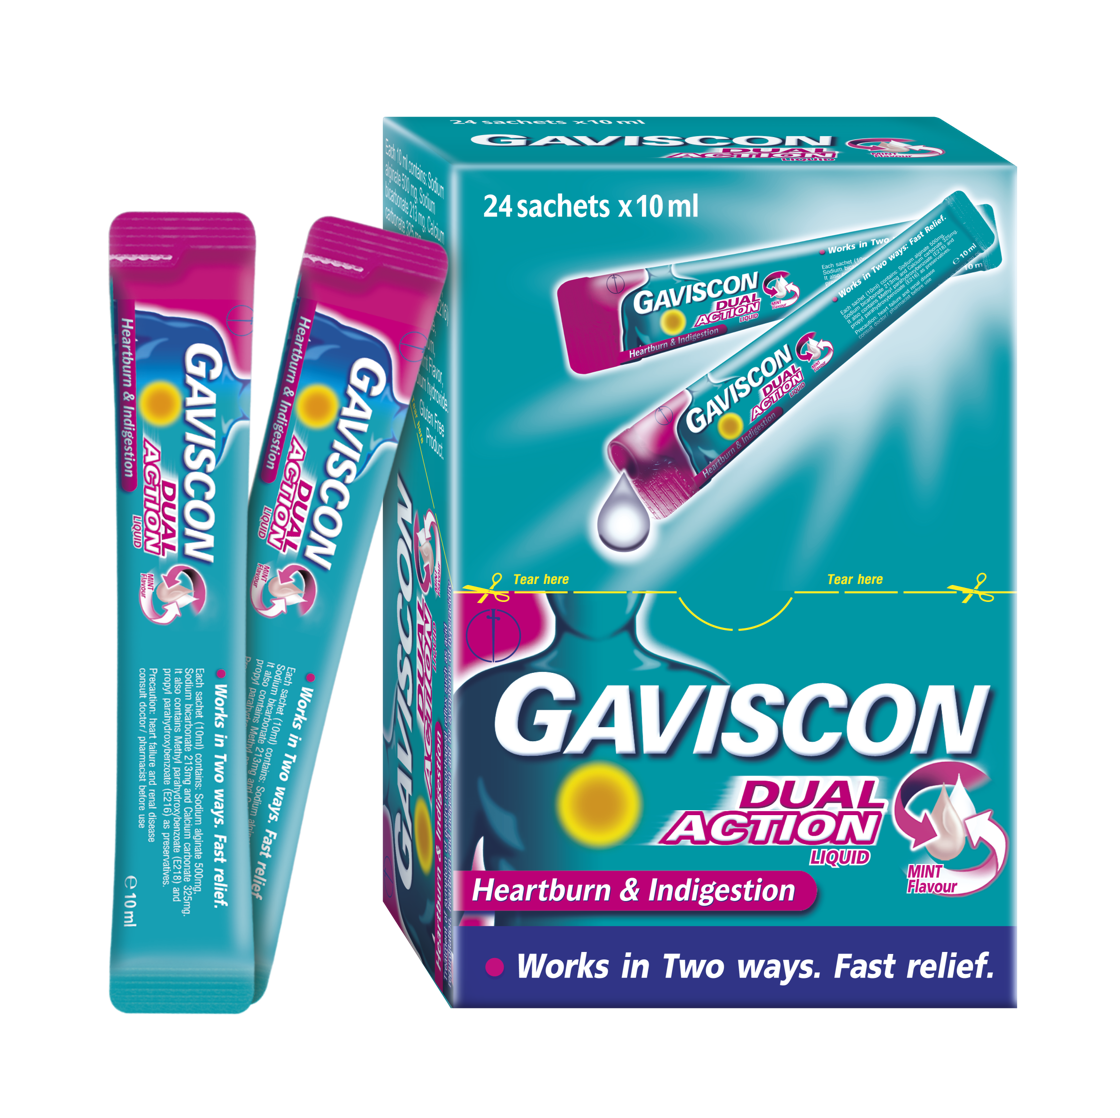 Thuốc Gaviscon hỗn hợp dịch uống